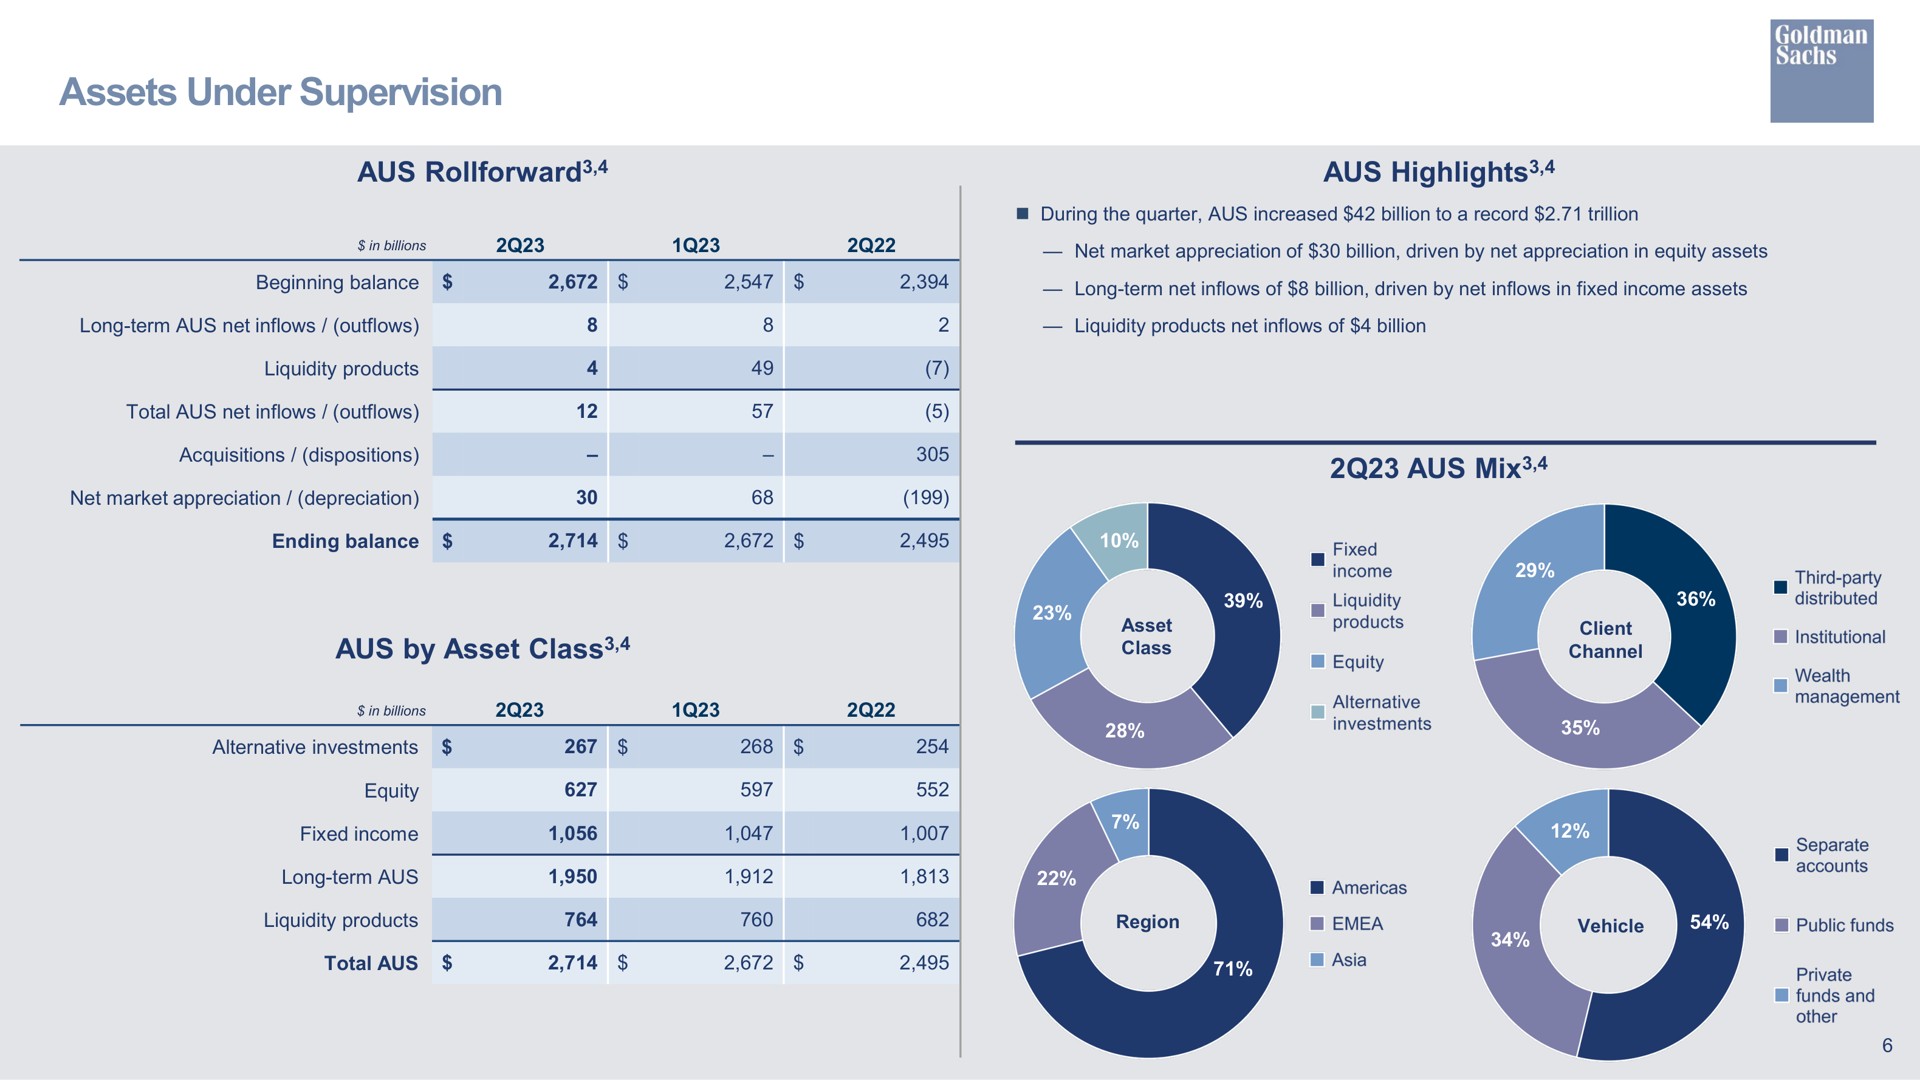 assets under supervision highlights by asset class mix highlights class mix | Goldman Sachs